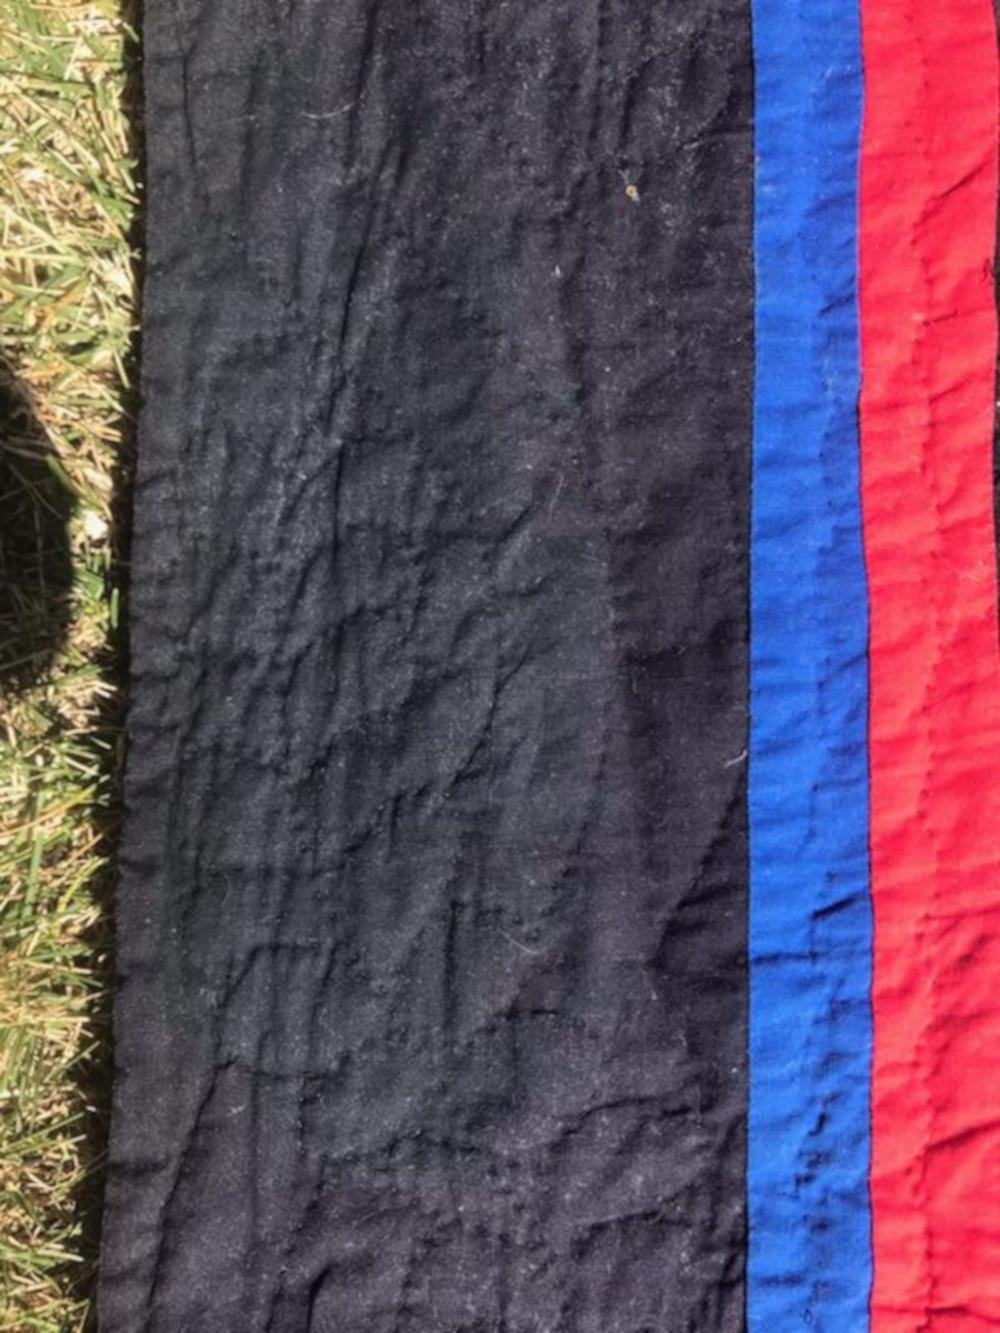 Diese fein gestickte Holmes County Ohio Amish Mini - gestickte Ozean Wellen Quilt ist in gutem Zustand. Es hat eine doppelte Innenbordüre in Rot und Blau und ist auf einem schwarzen Rundgewebe auf der Rückseite angebracht. Die Steppung ist sehr gut